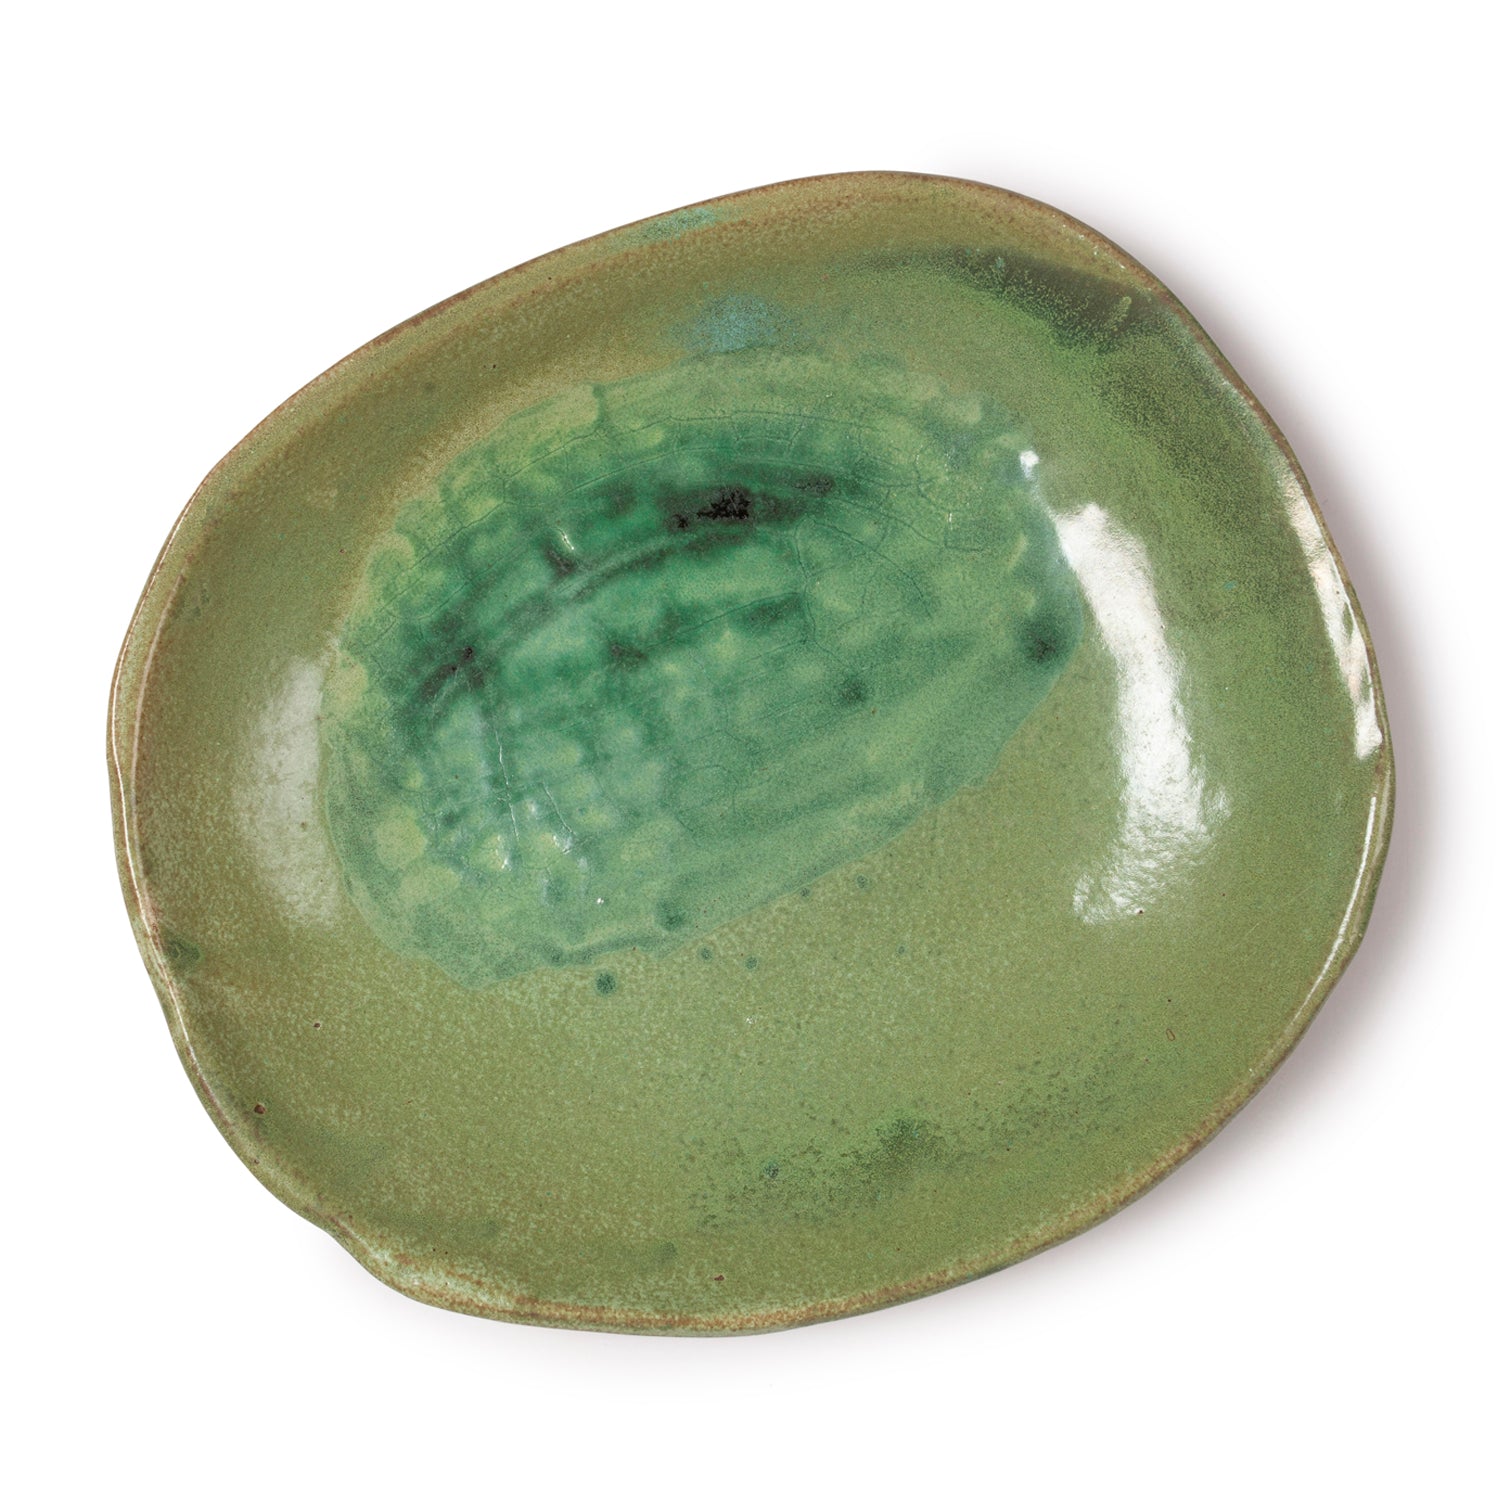 Glazed Terracotta Bowl